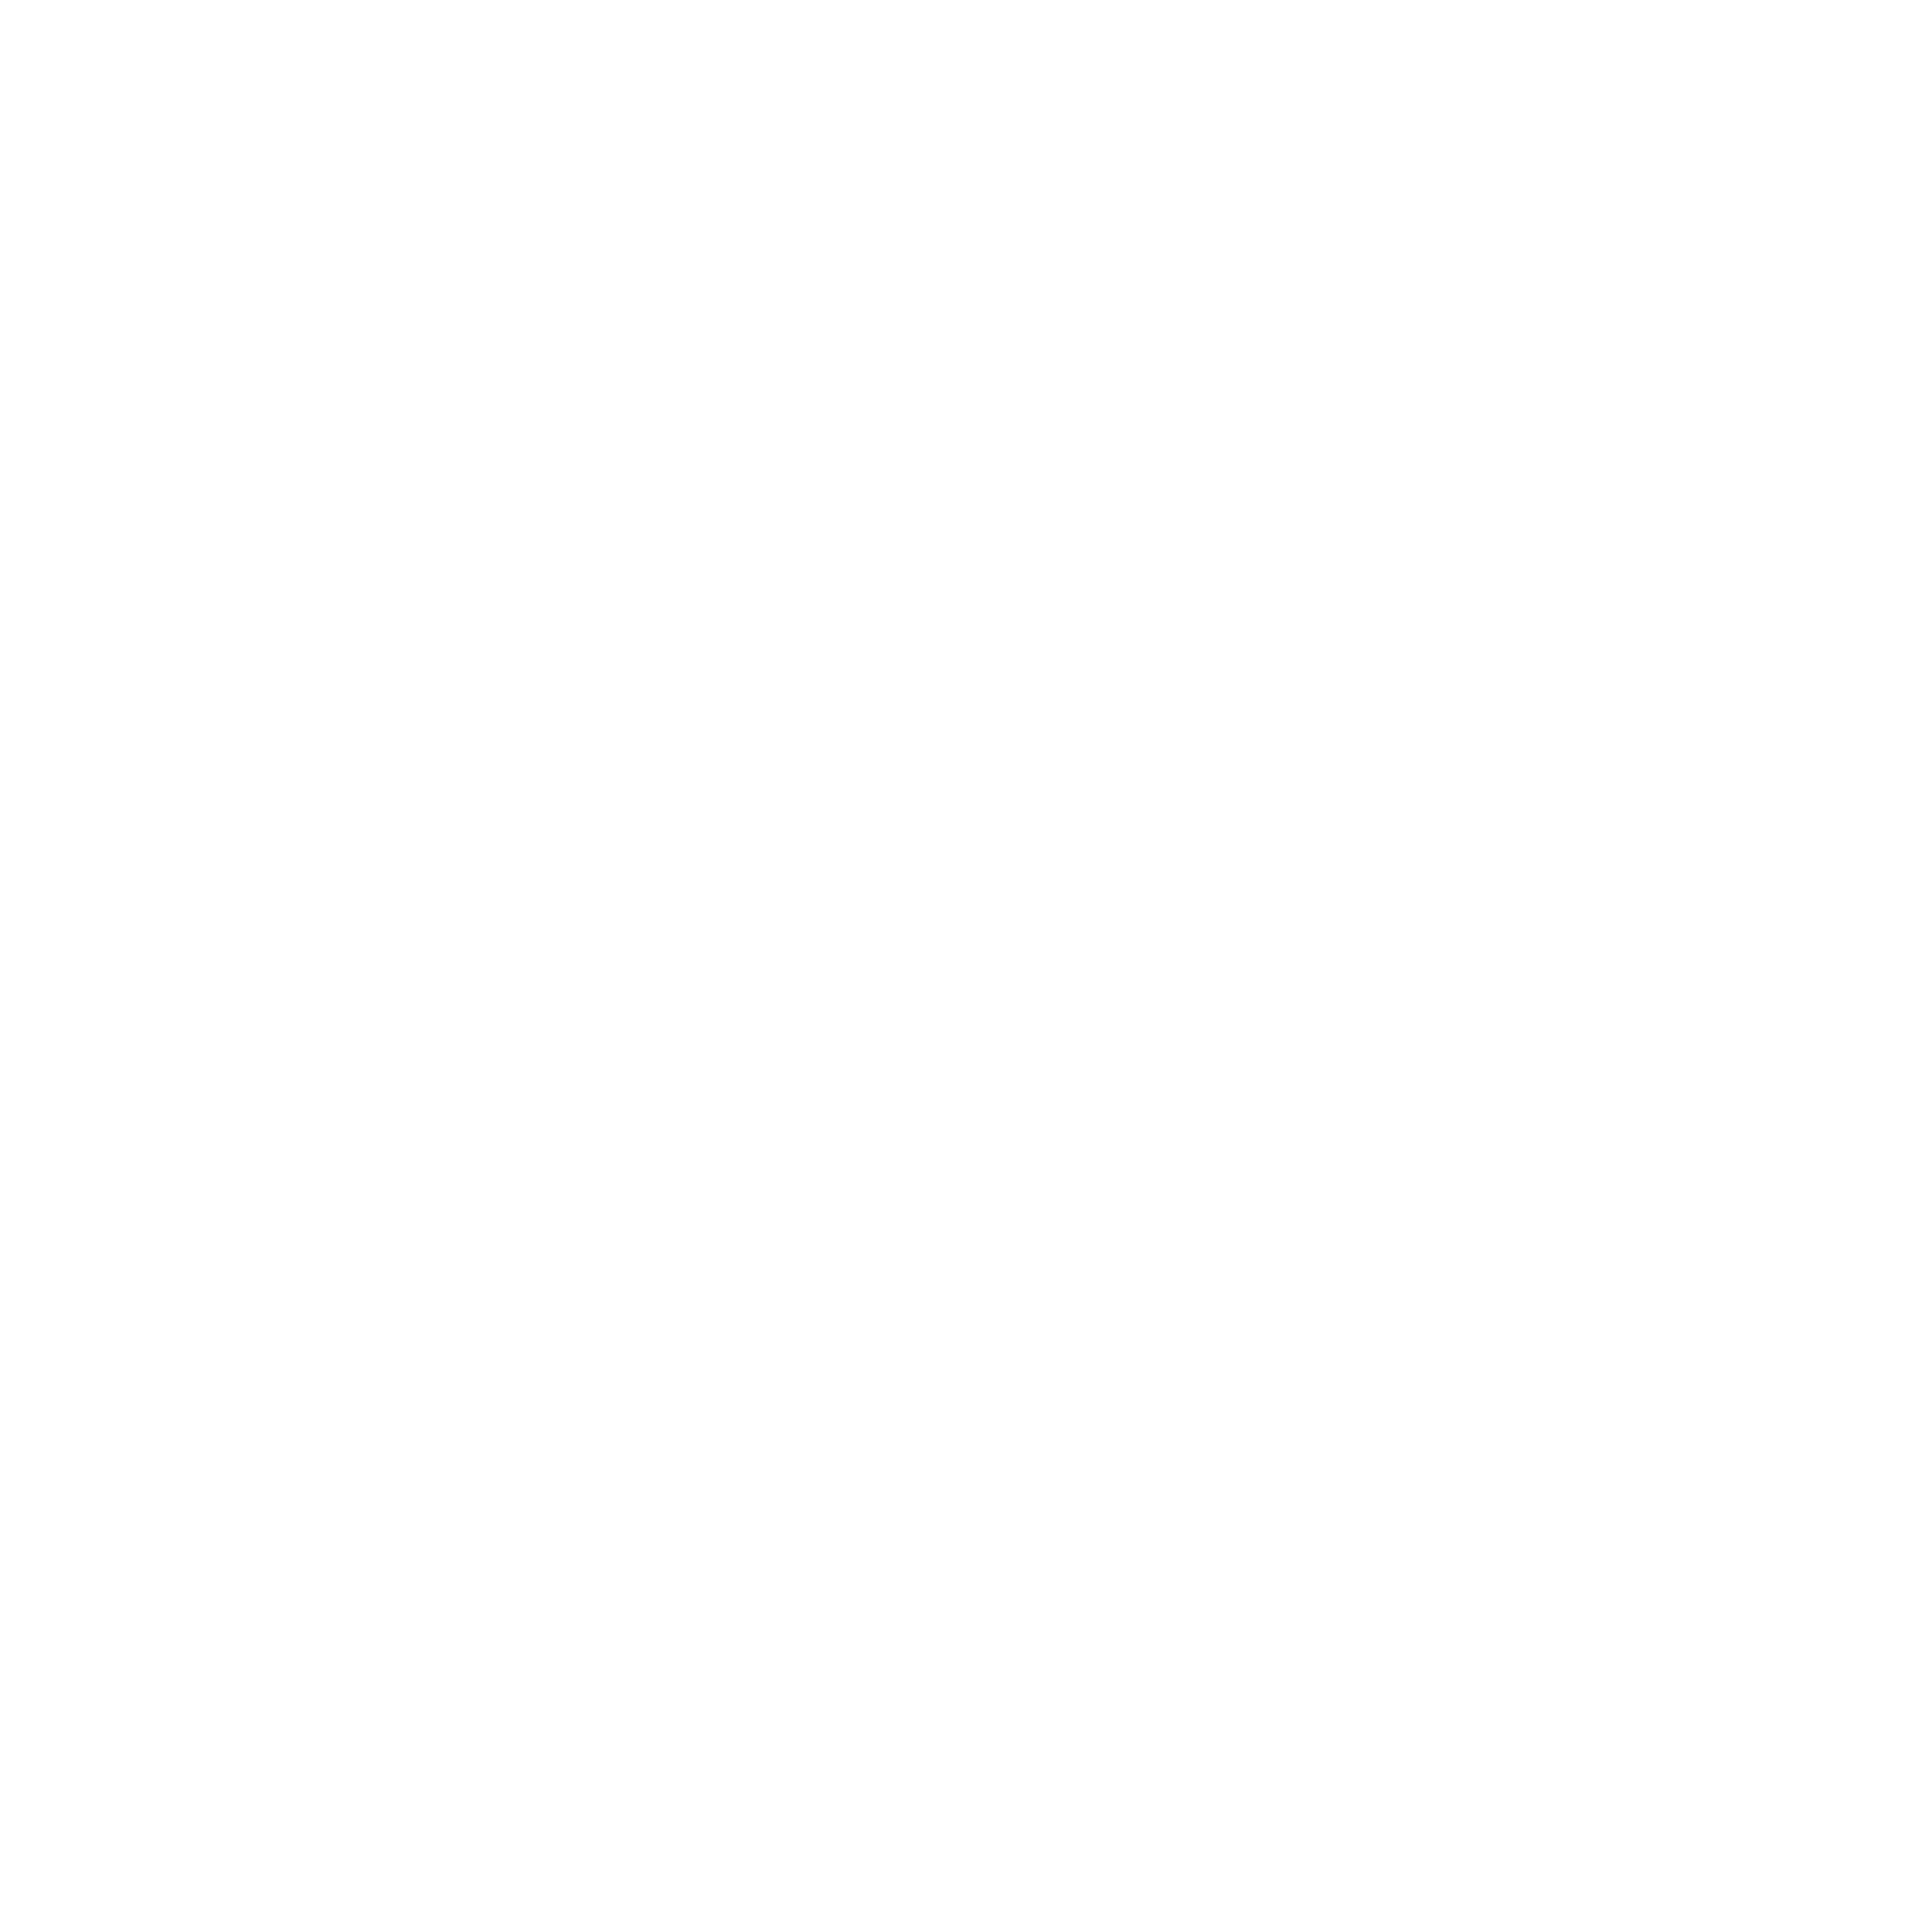 NERO-street-style-logo-white